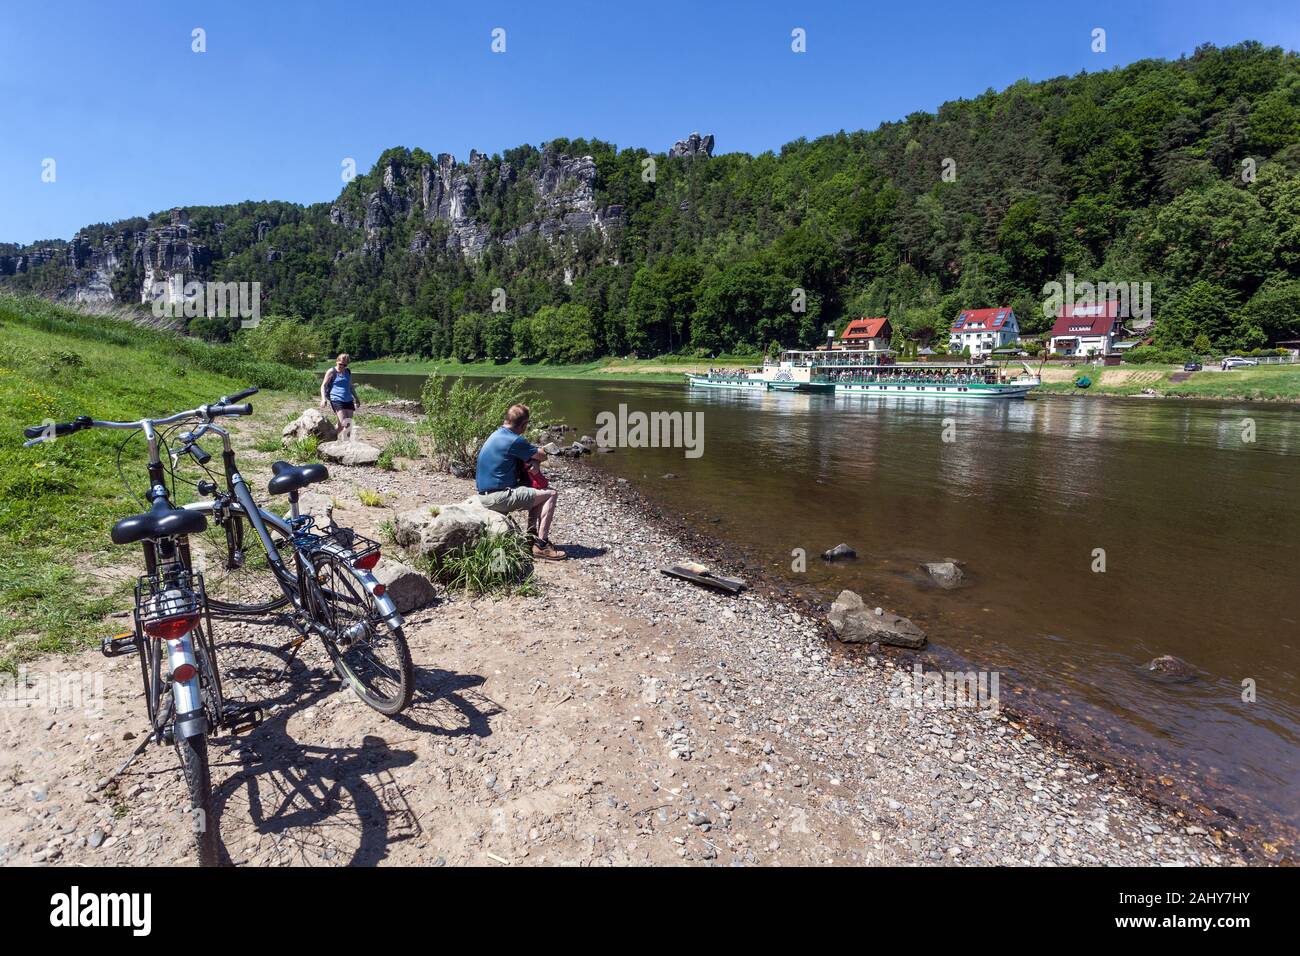 Arrêt des cyclistes sur les rives de l'Elbe dans la vallée au-dessous des rochers de grès de l'Elbe Bastei, le Parc National de la Suisse Saxonne Allemagne Banque D'Images